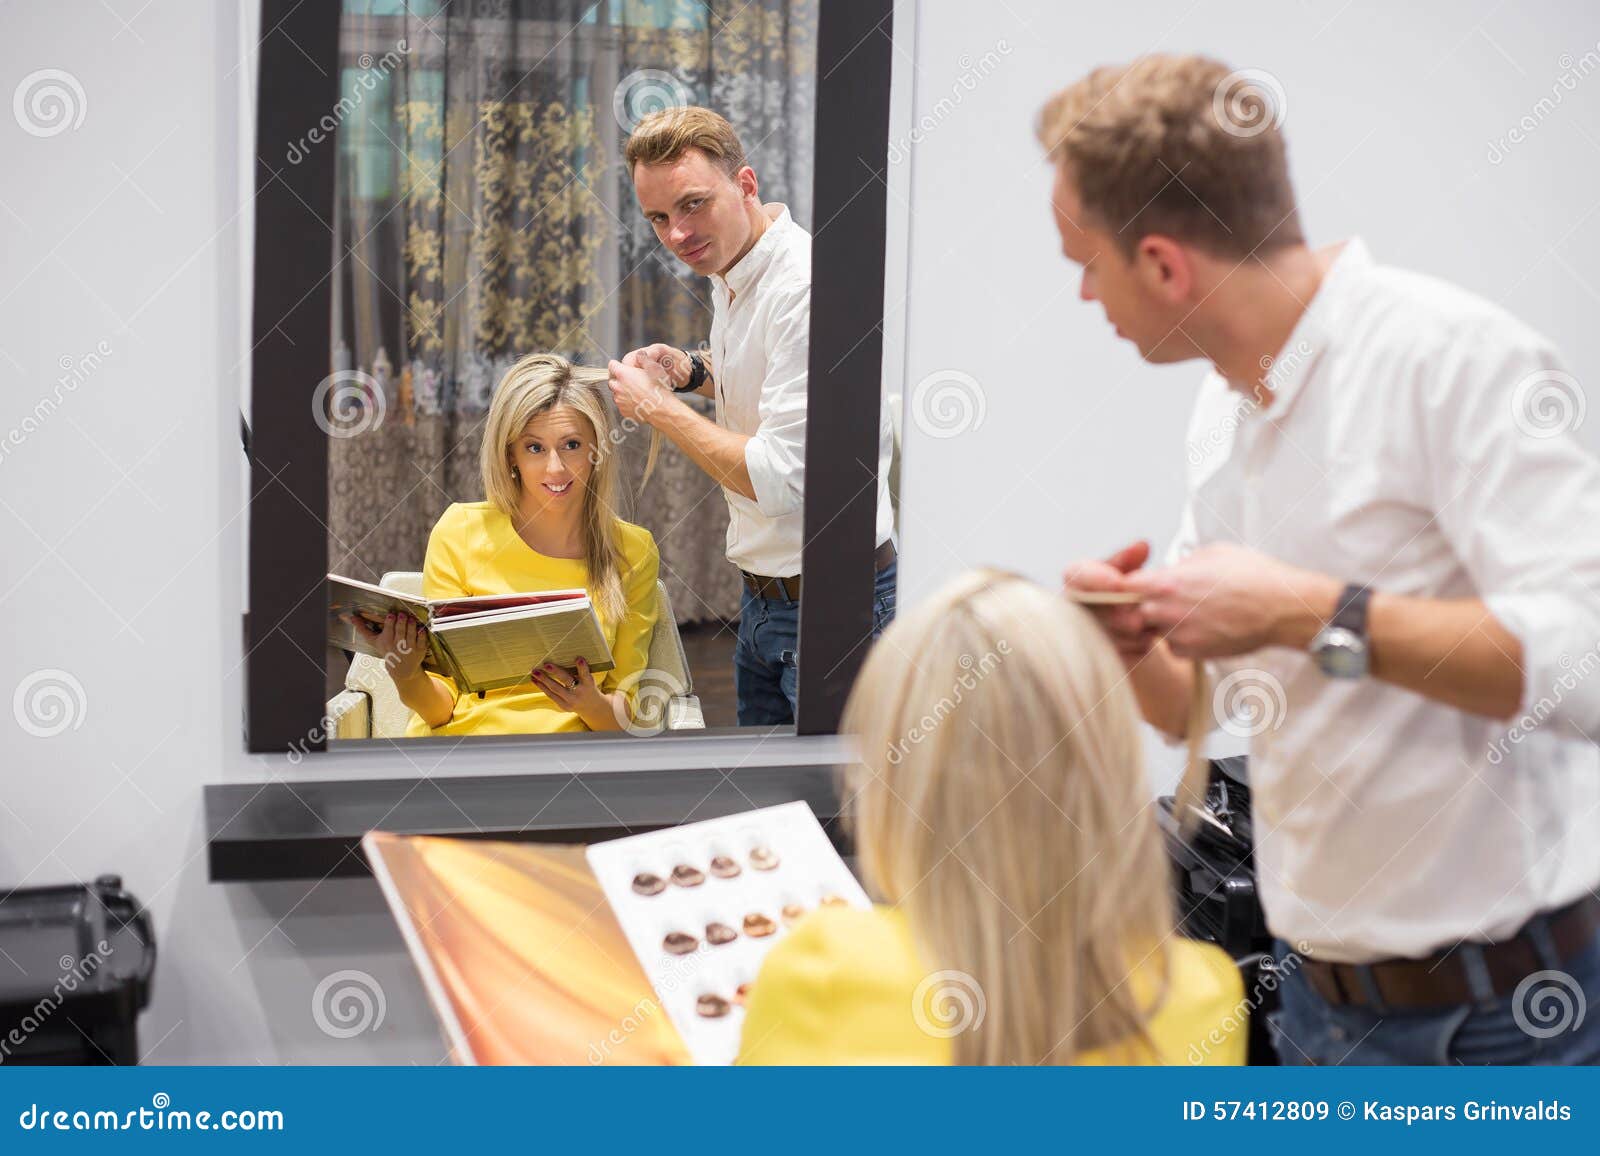 Blonde Hair Salon Toronto - wide 6